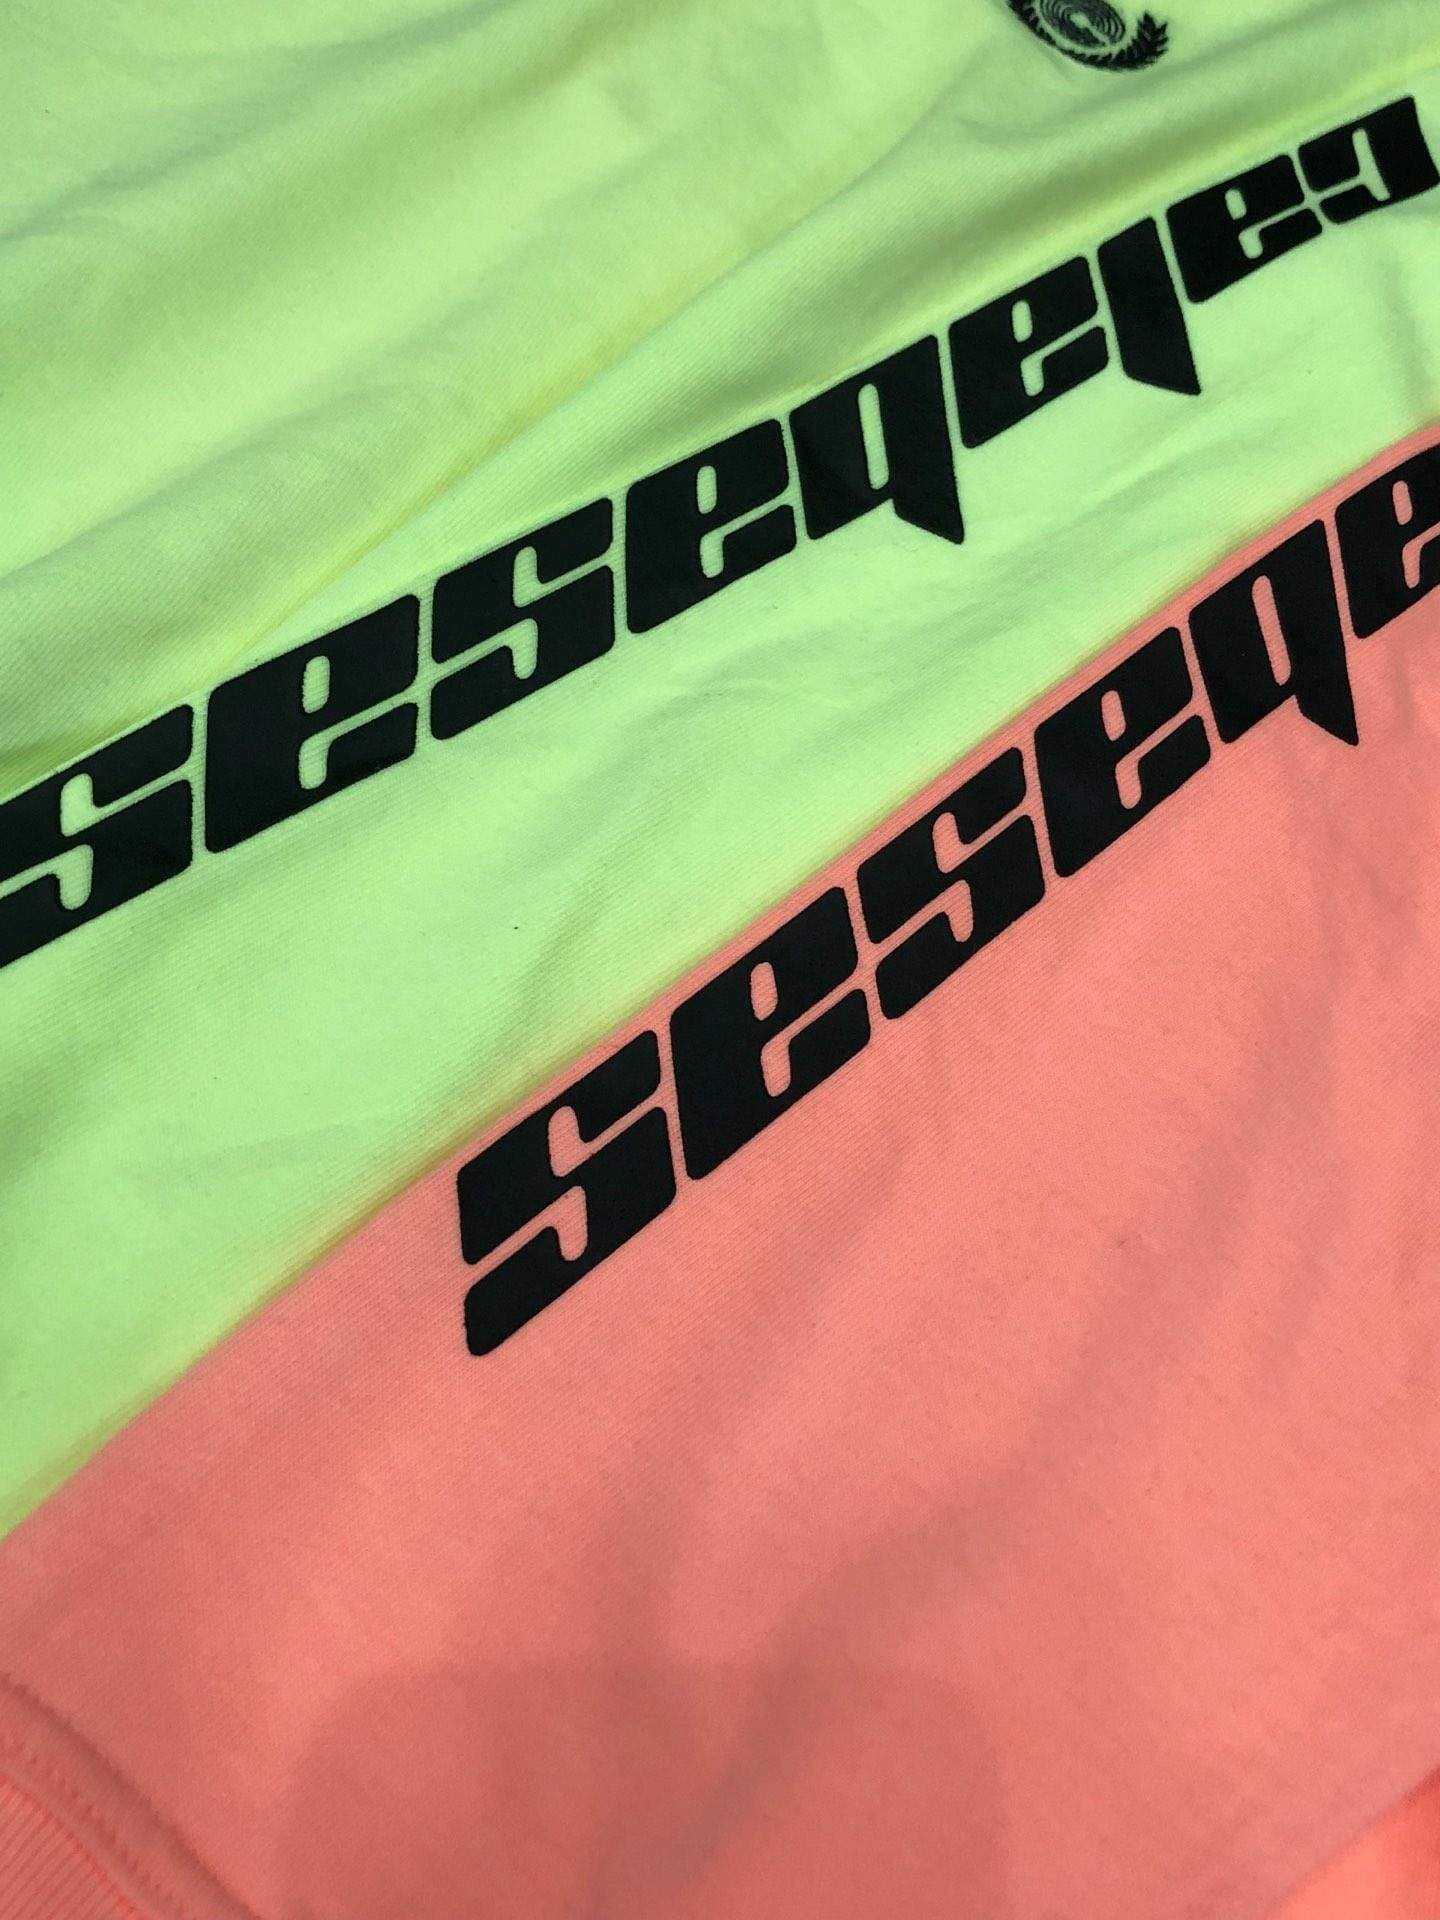 neon calabasas shirt